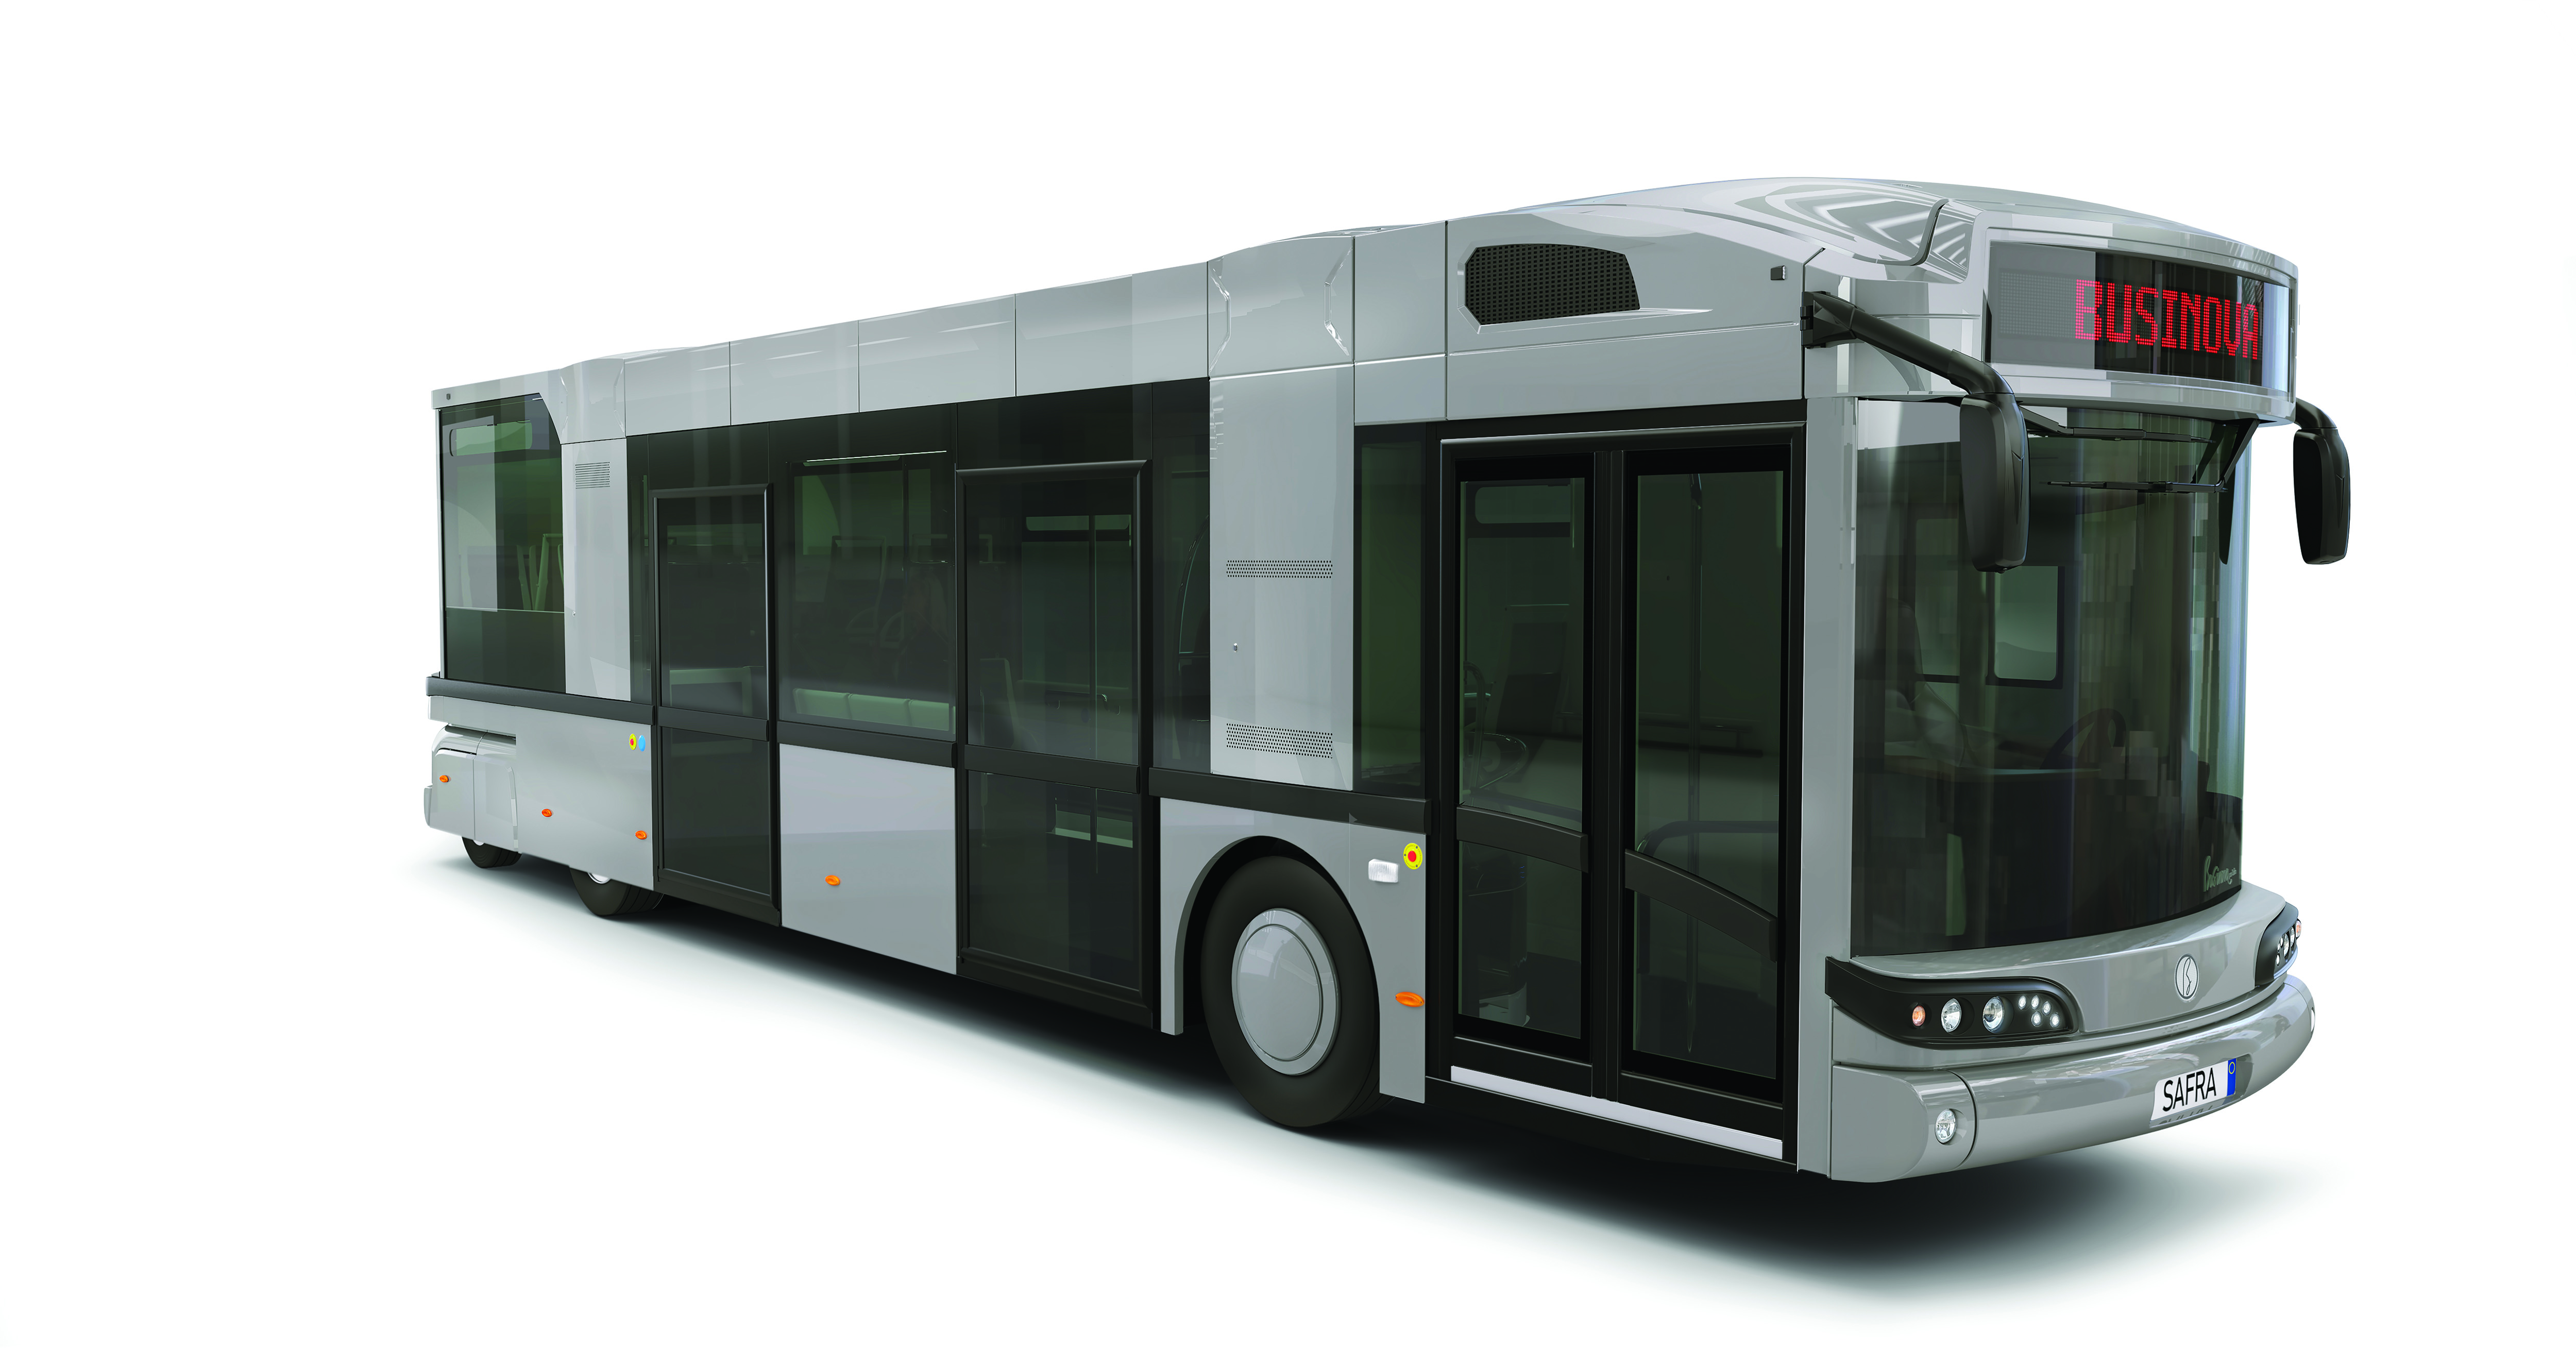 A suivre : le premier bus électrique hybride gaz rechargeable bientôt en circulation